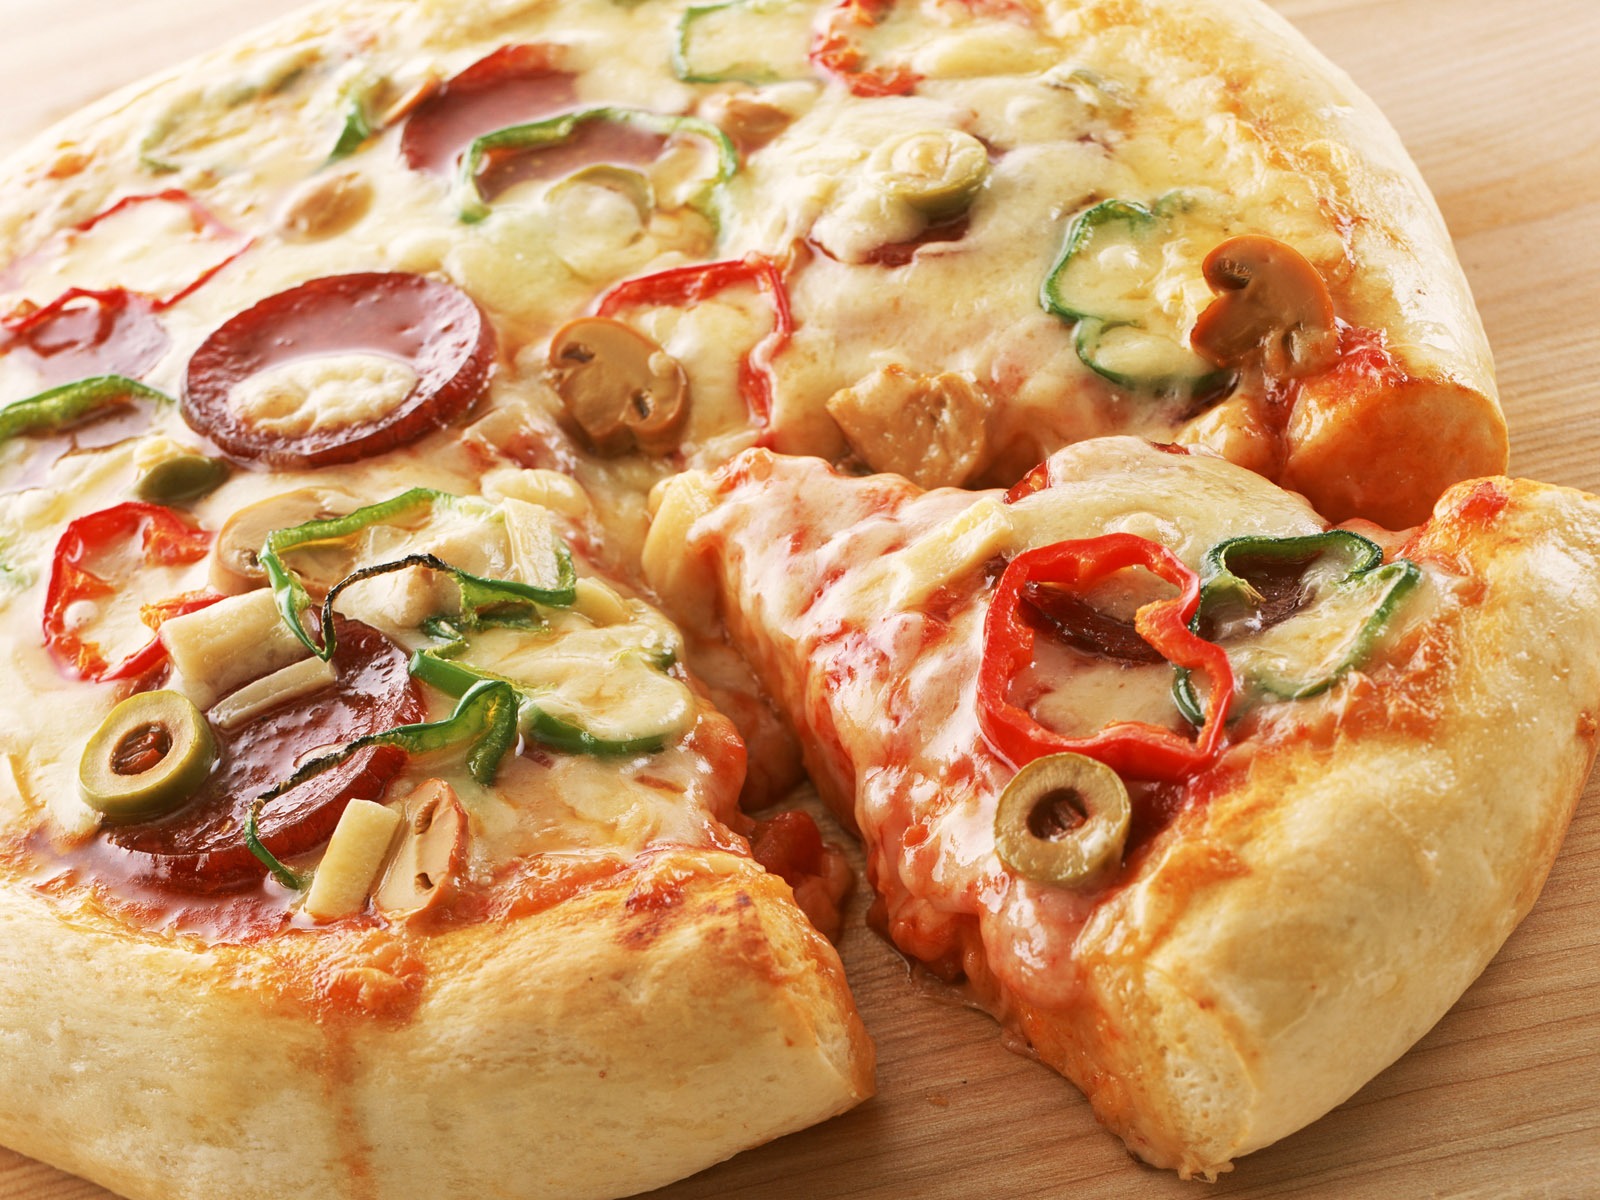 Fondos de pizzerías de Alimentos (1) #6 - 1600x1200